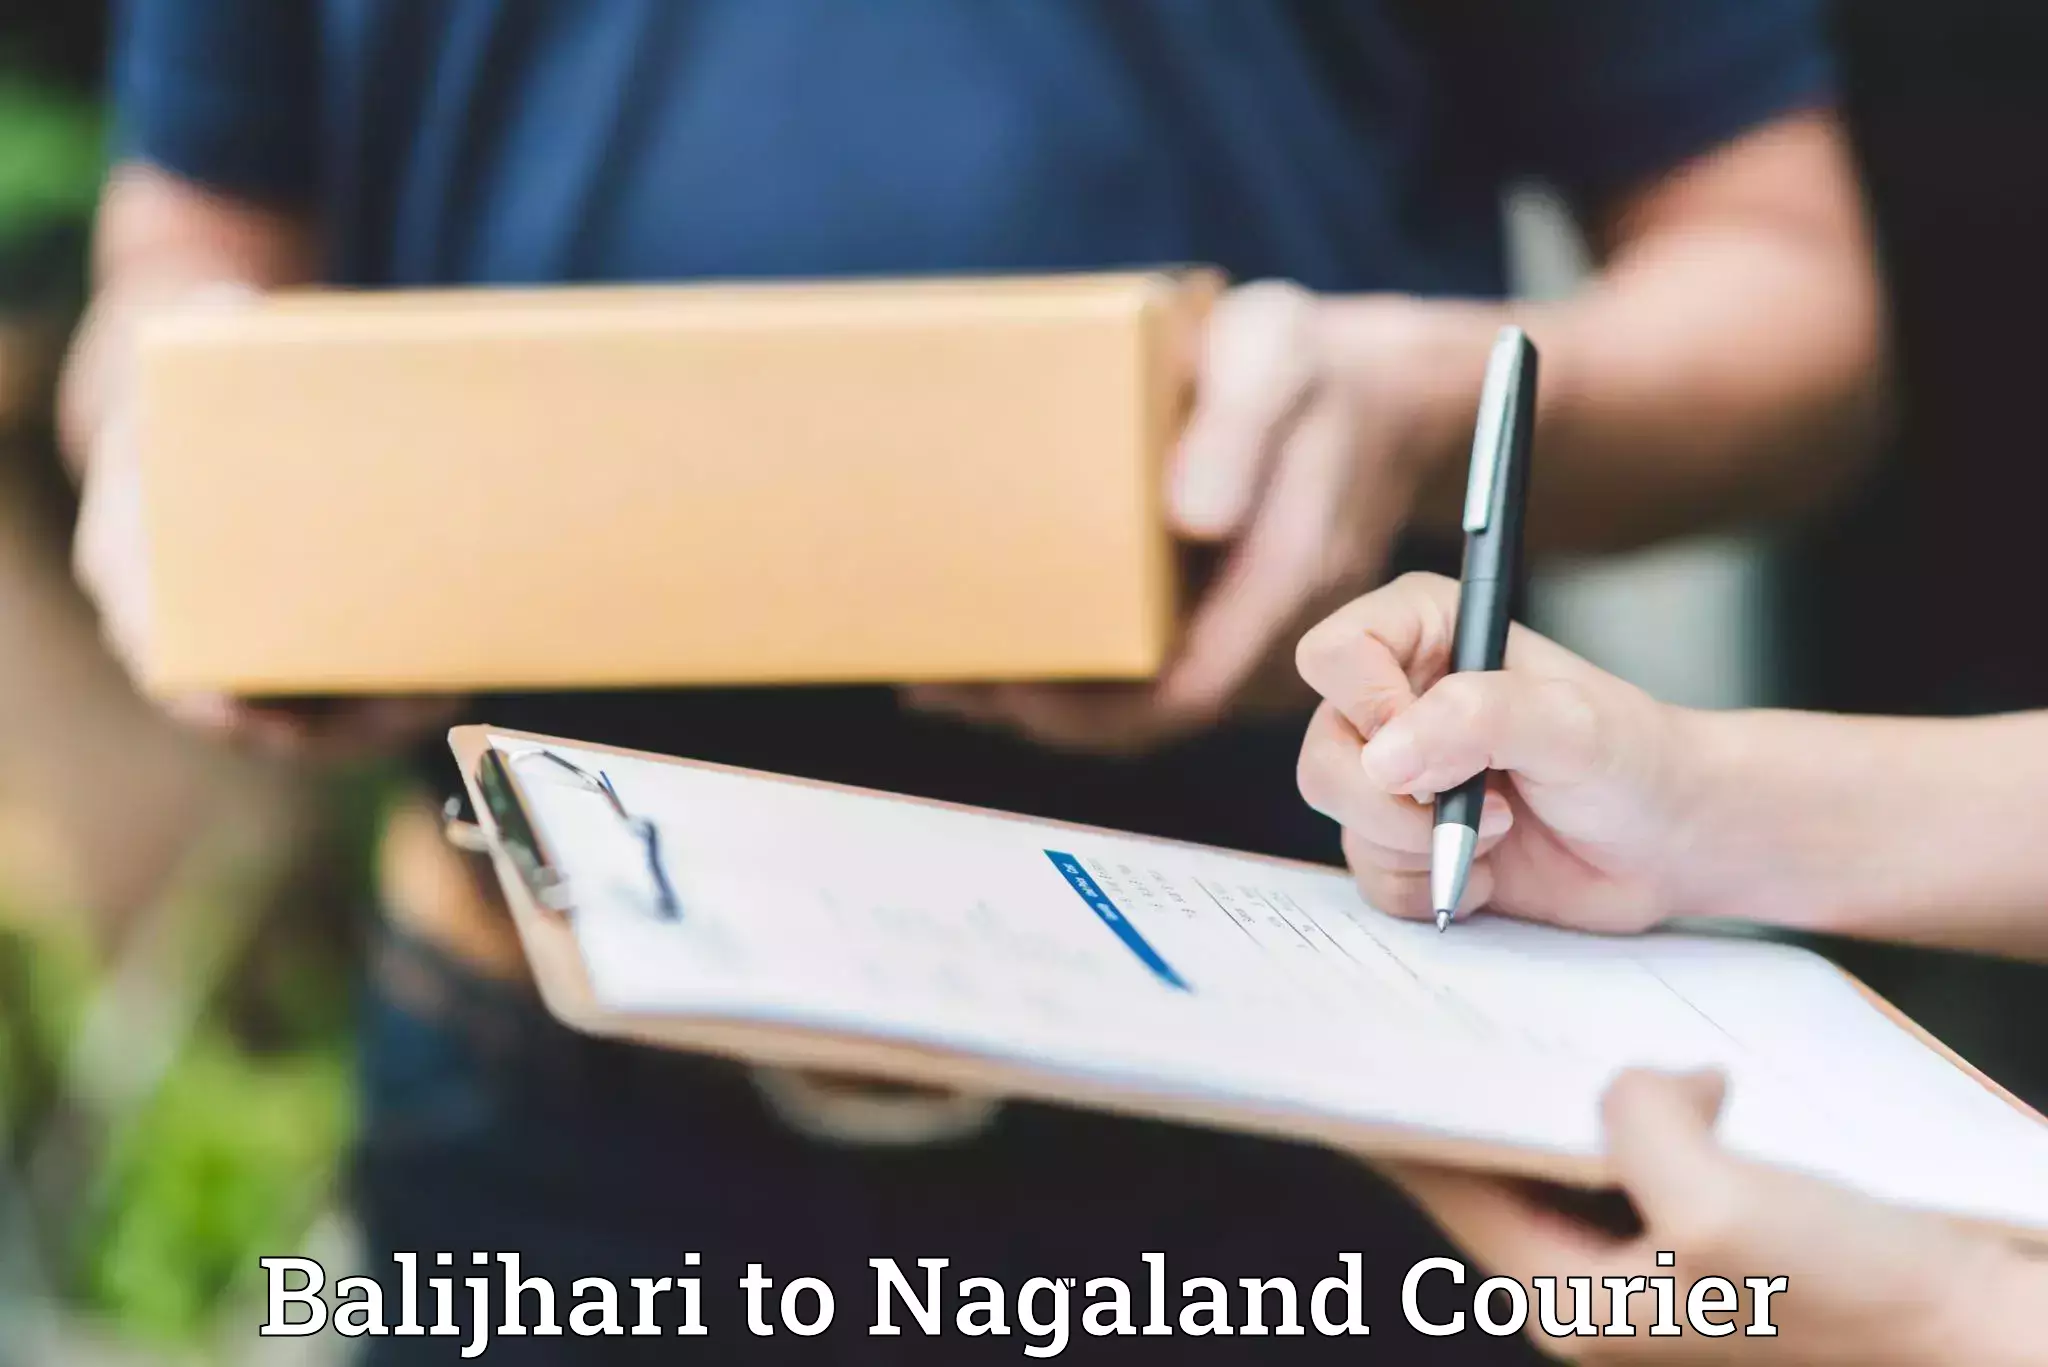 Professional moving company Balijhari to NIT Nagaland